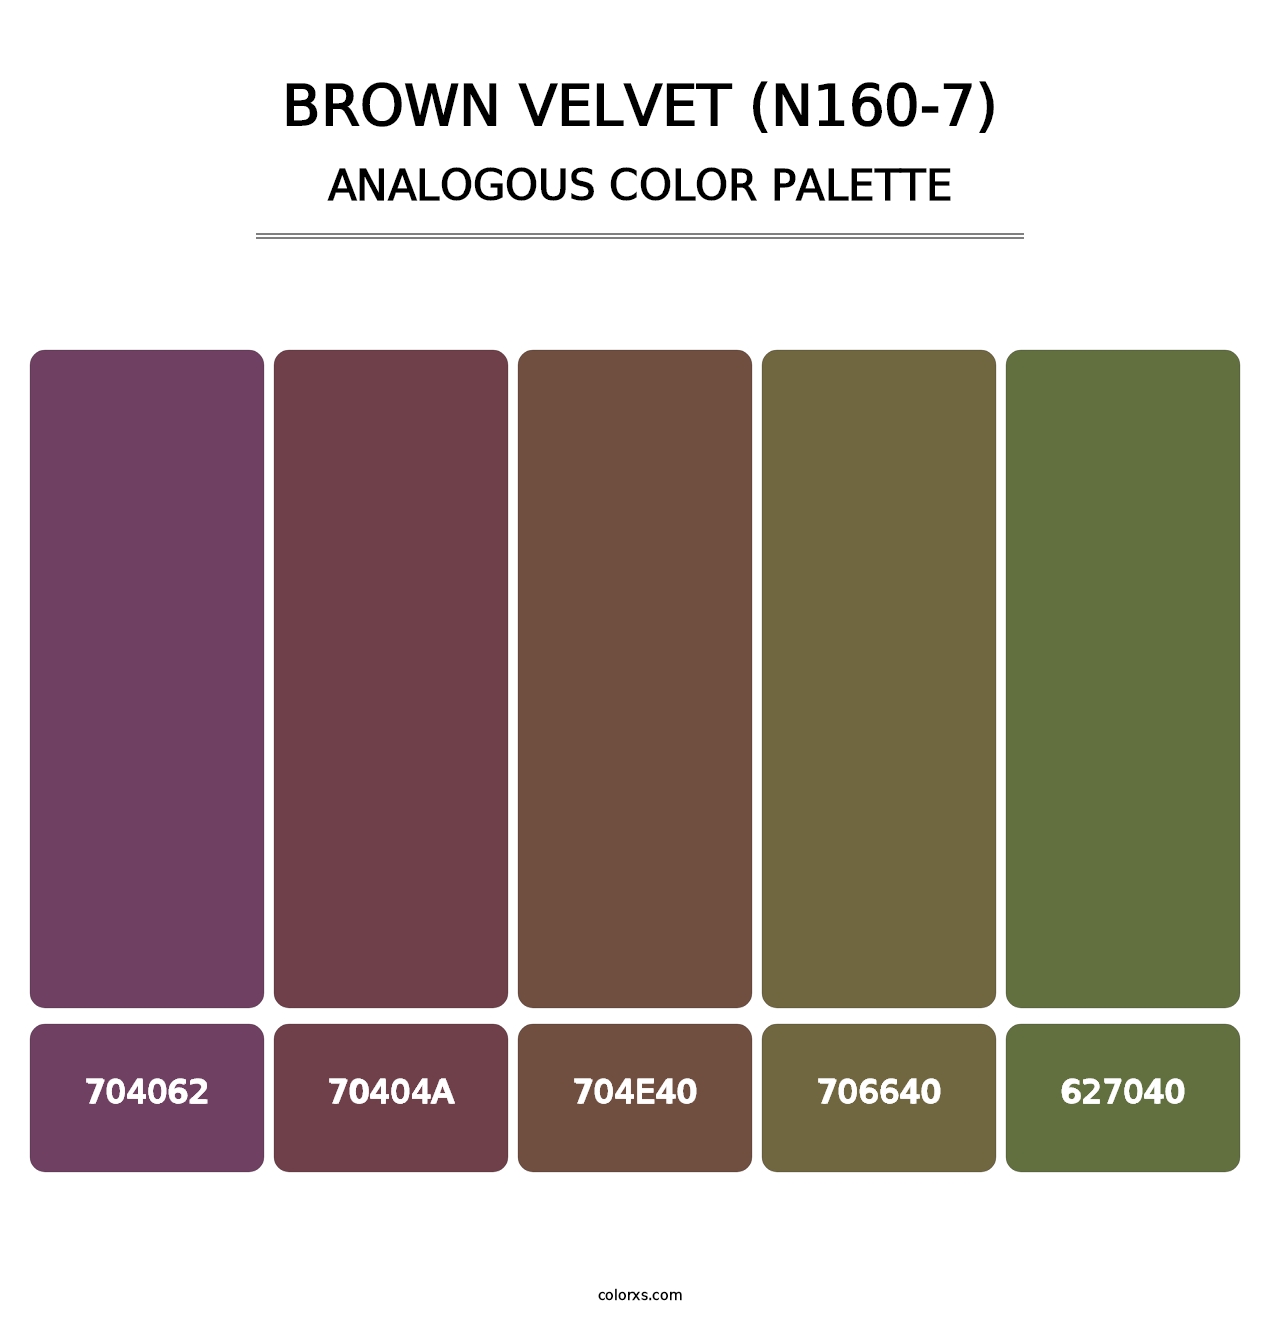 Brown Velvet (N160-7) - Analogous Color Palette